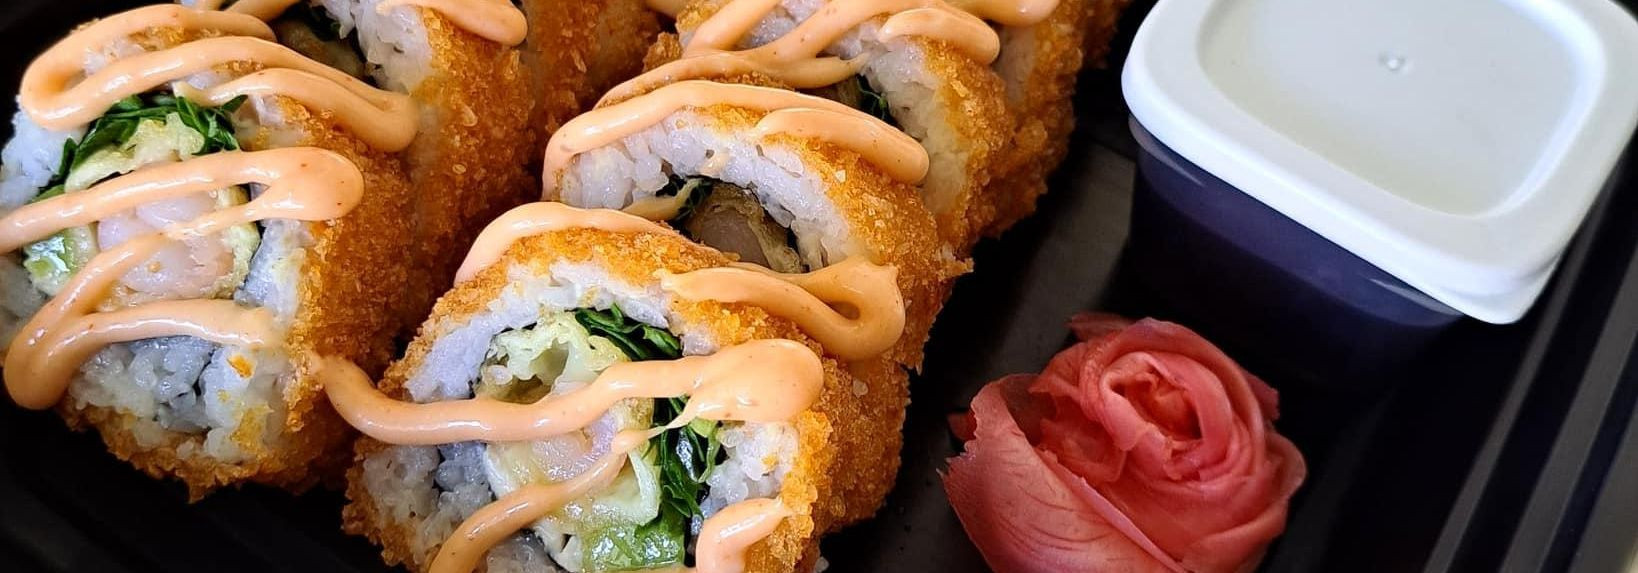 Tere tulemast sushi söömise revolutsiooni - ainulaadne mugavuse ja kulinaarse naudingu sümbioos, mis sobib teie dünaamilise elustiiliga. BRAMPS OÜ juures oleme 